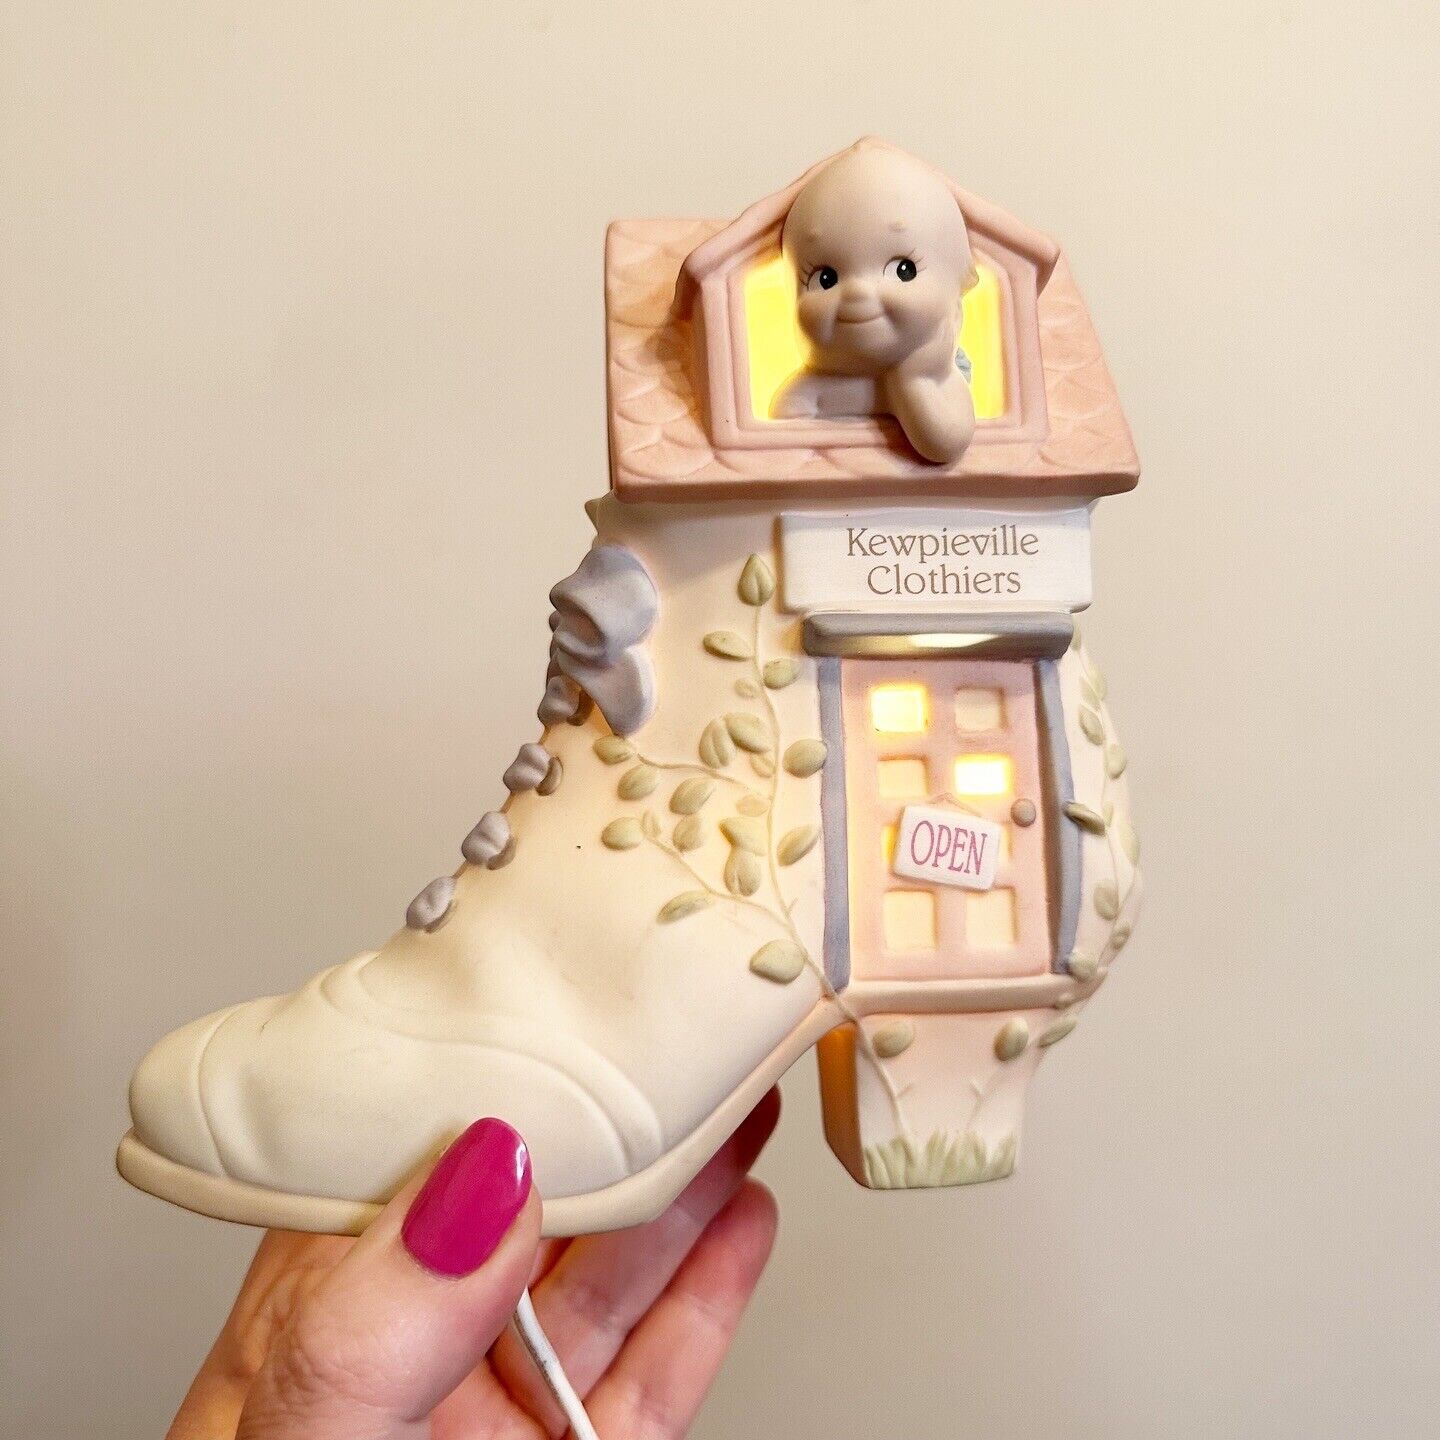 Kewpie Nightlight Kewpieville clothiers shoe Porcelain WORKS Kitschy Cute